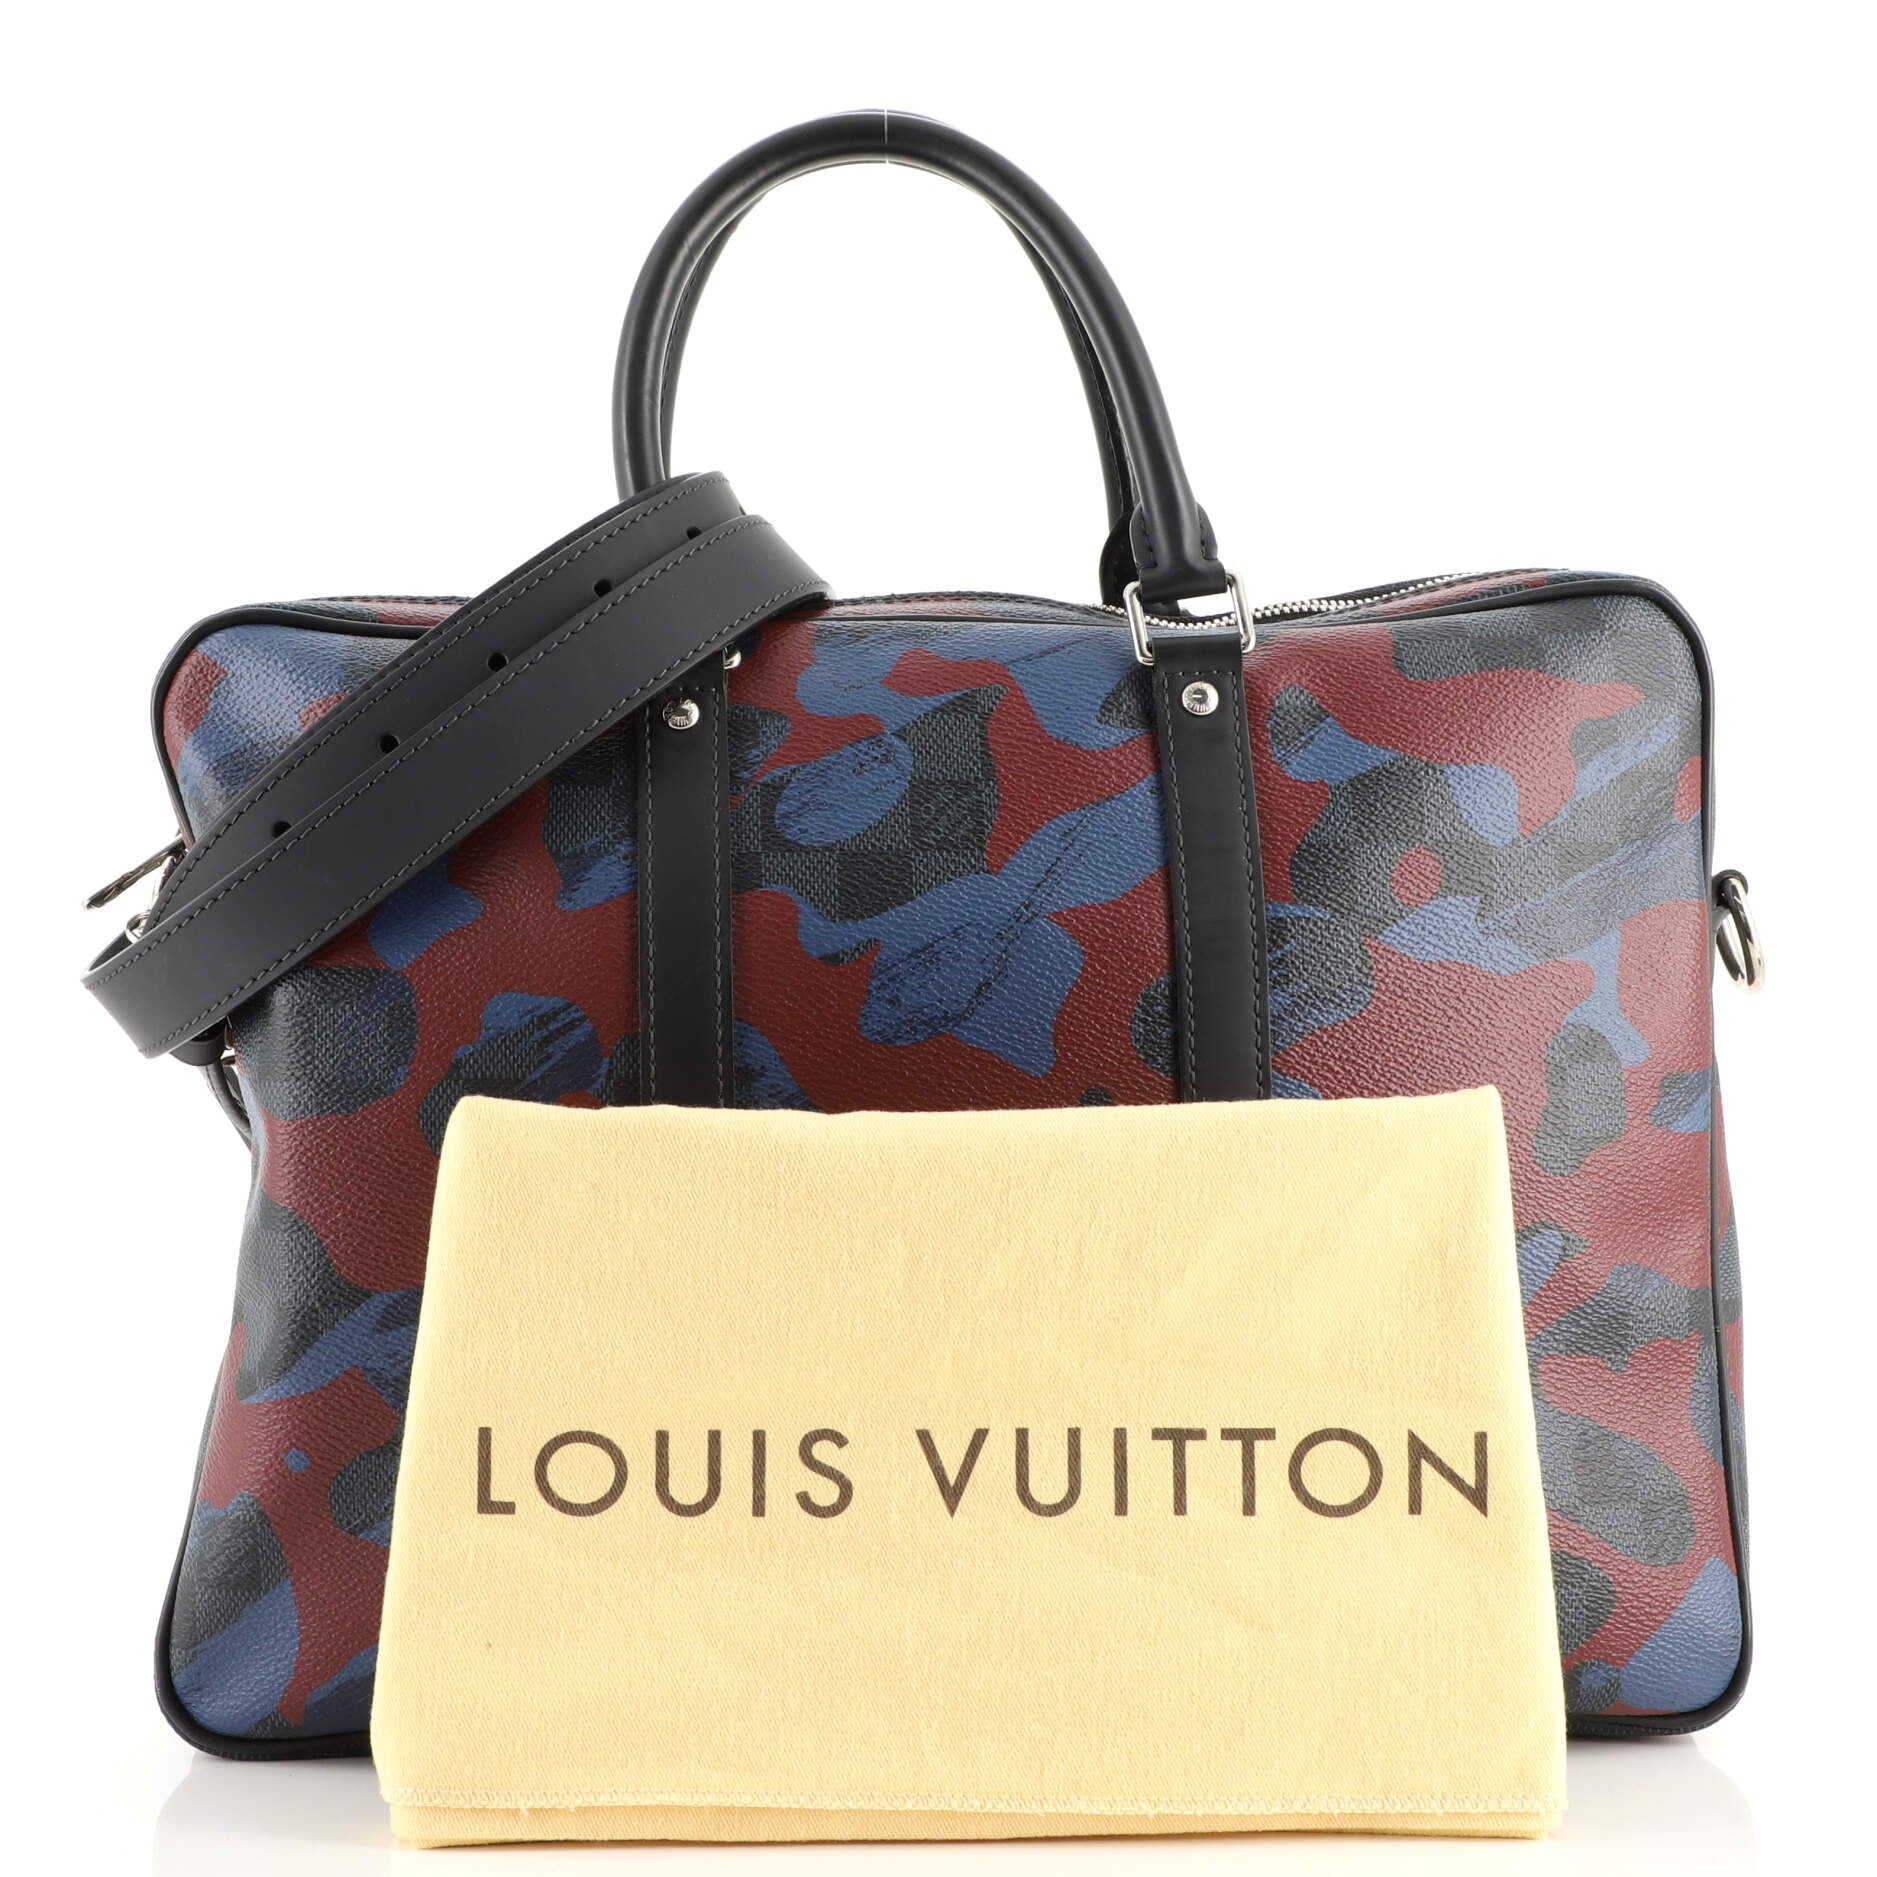 Pre-owned Louis Vuitton X Bumbag Monogram Camo Pm Camo